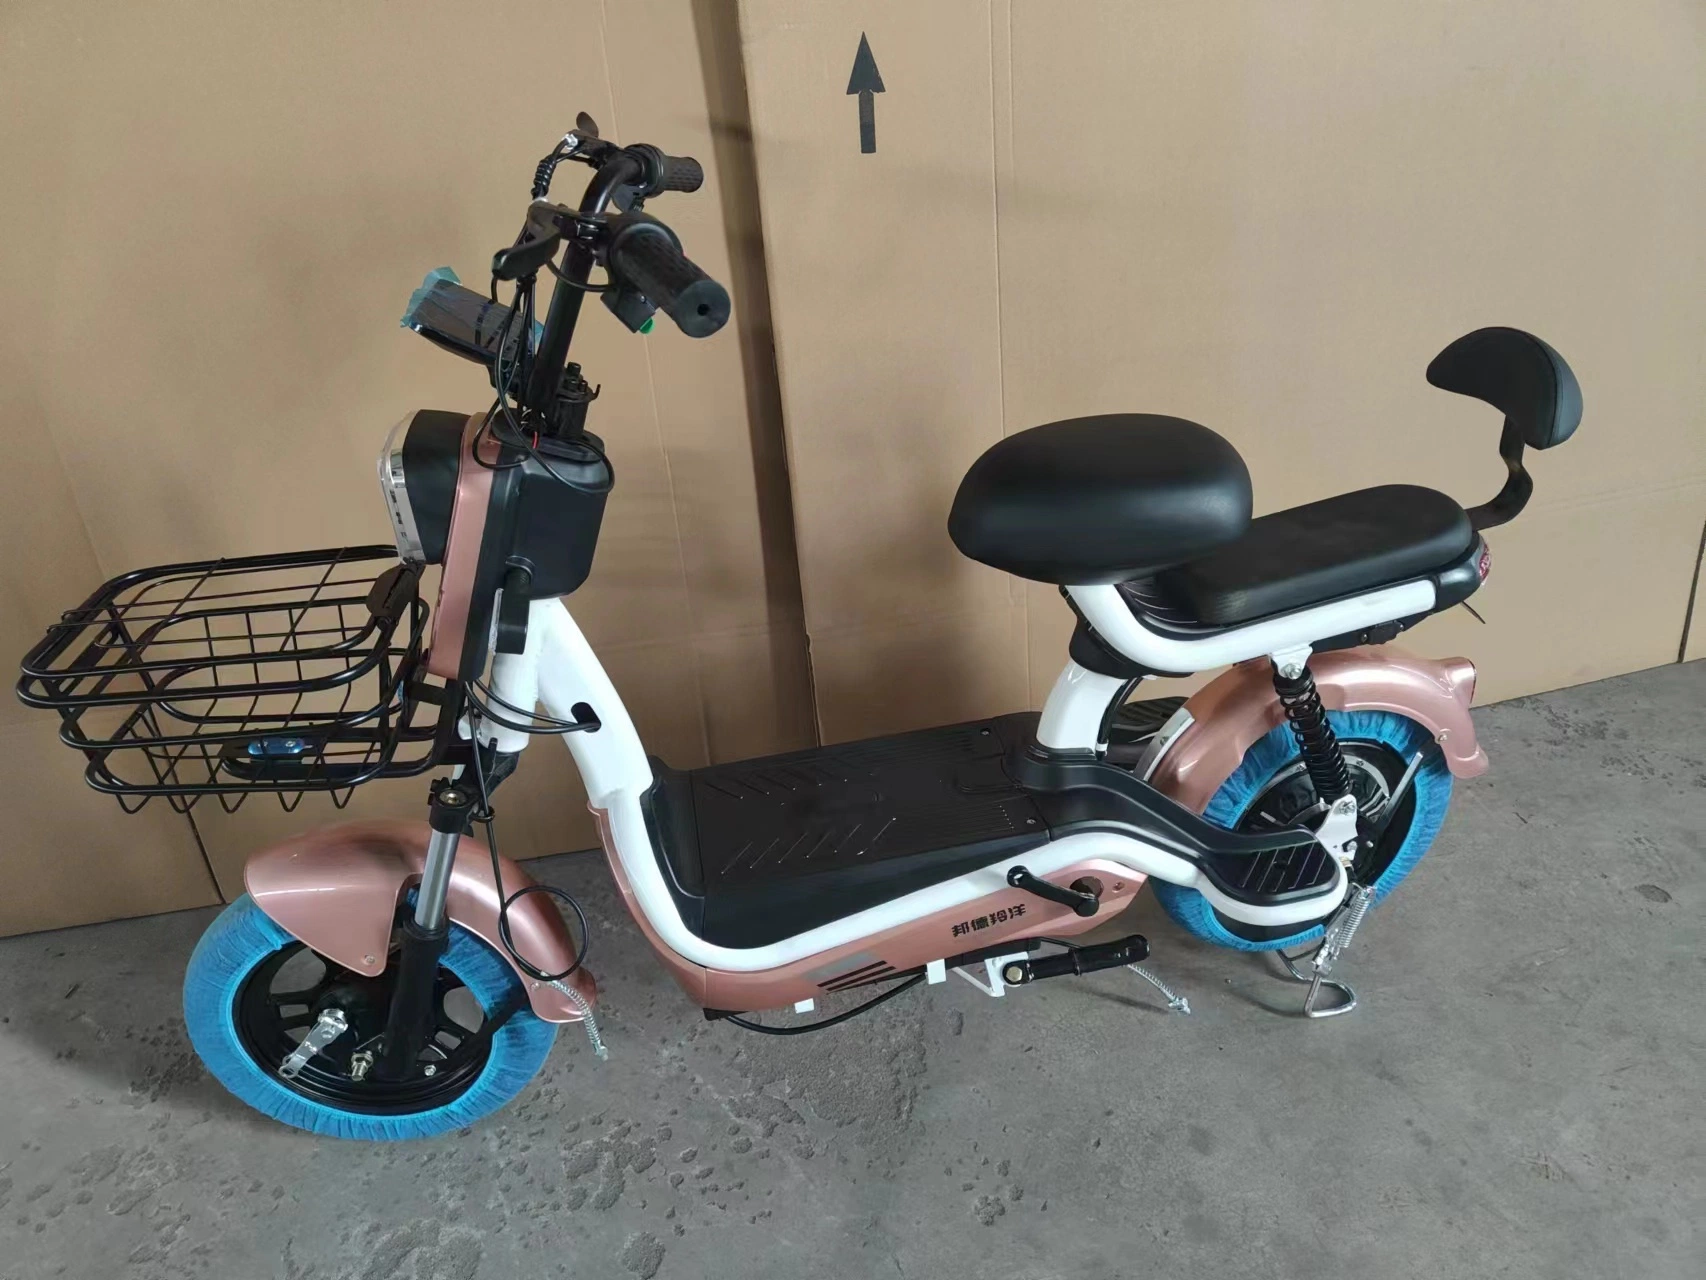 Новый дизайн для изготовителей оборудования Китая Strong два колеса 500Вт Питание от аккумулятора женщина города Bicicleta электрический велосипед велосипед с педали тормоза